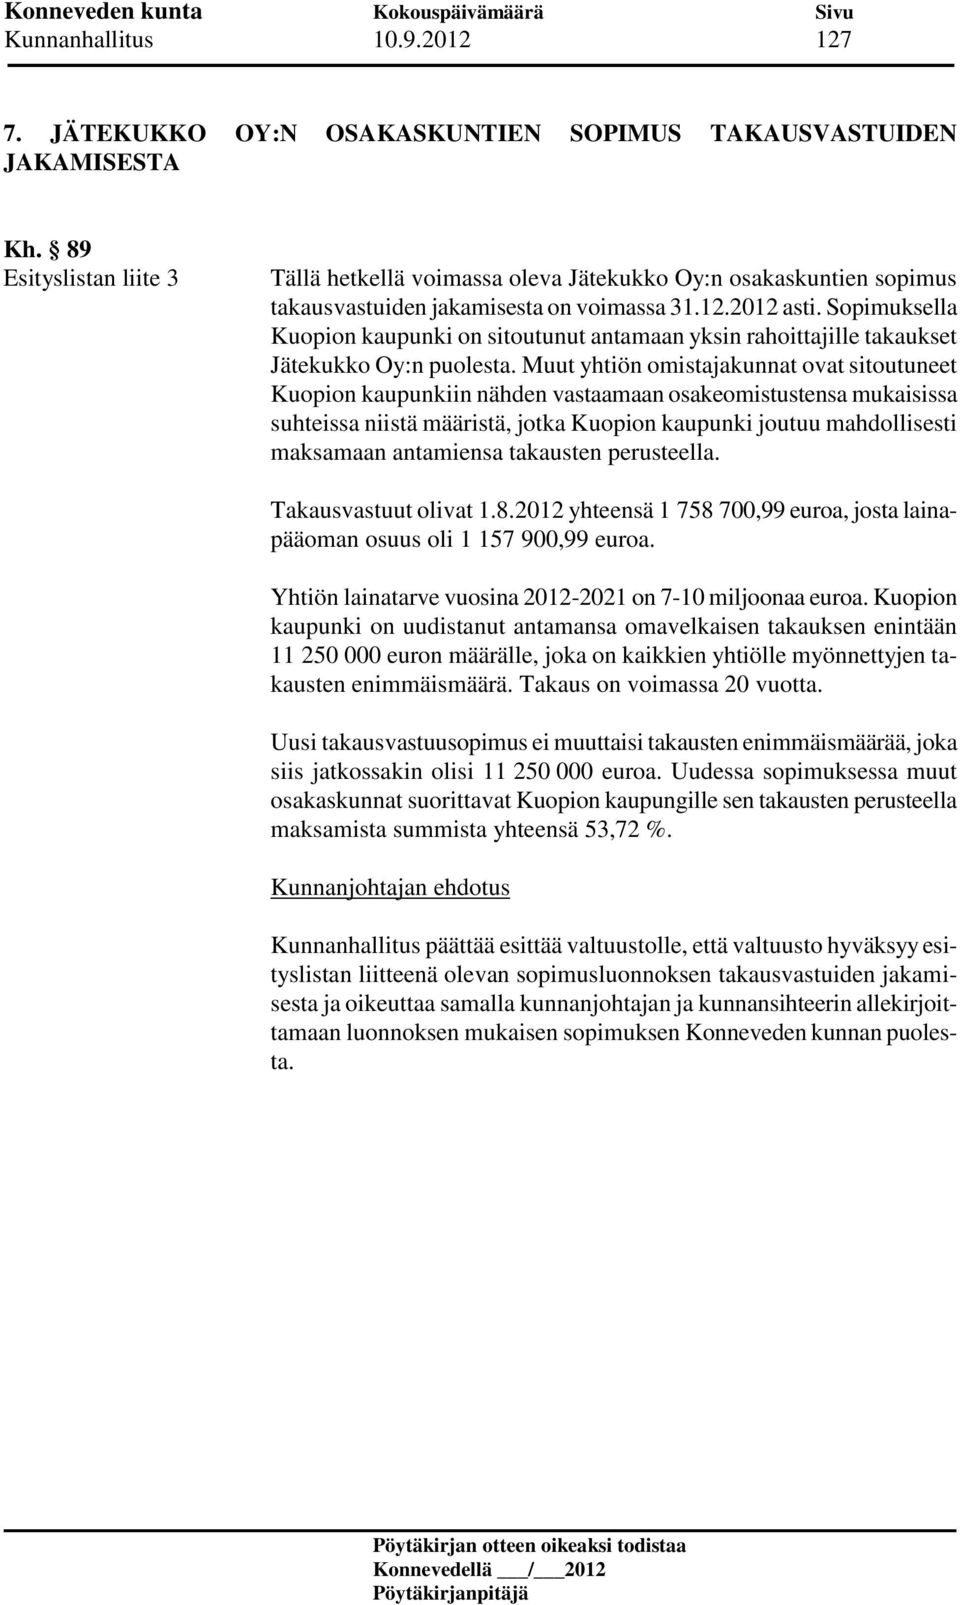 Sopimuksella Kuopion kaupunki on sitoutunut antamaan yksin rahoittajille takaukset Jätekukko Oy:n puolesta.